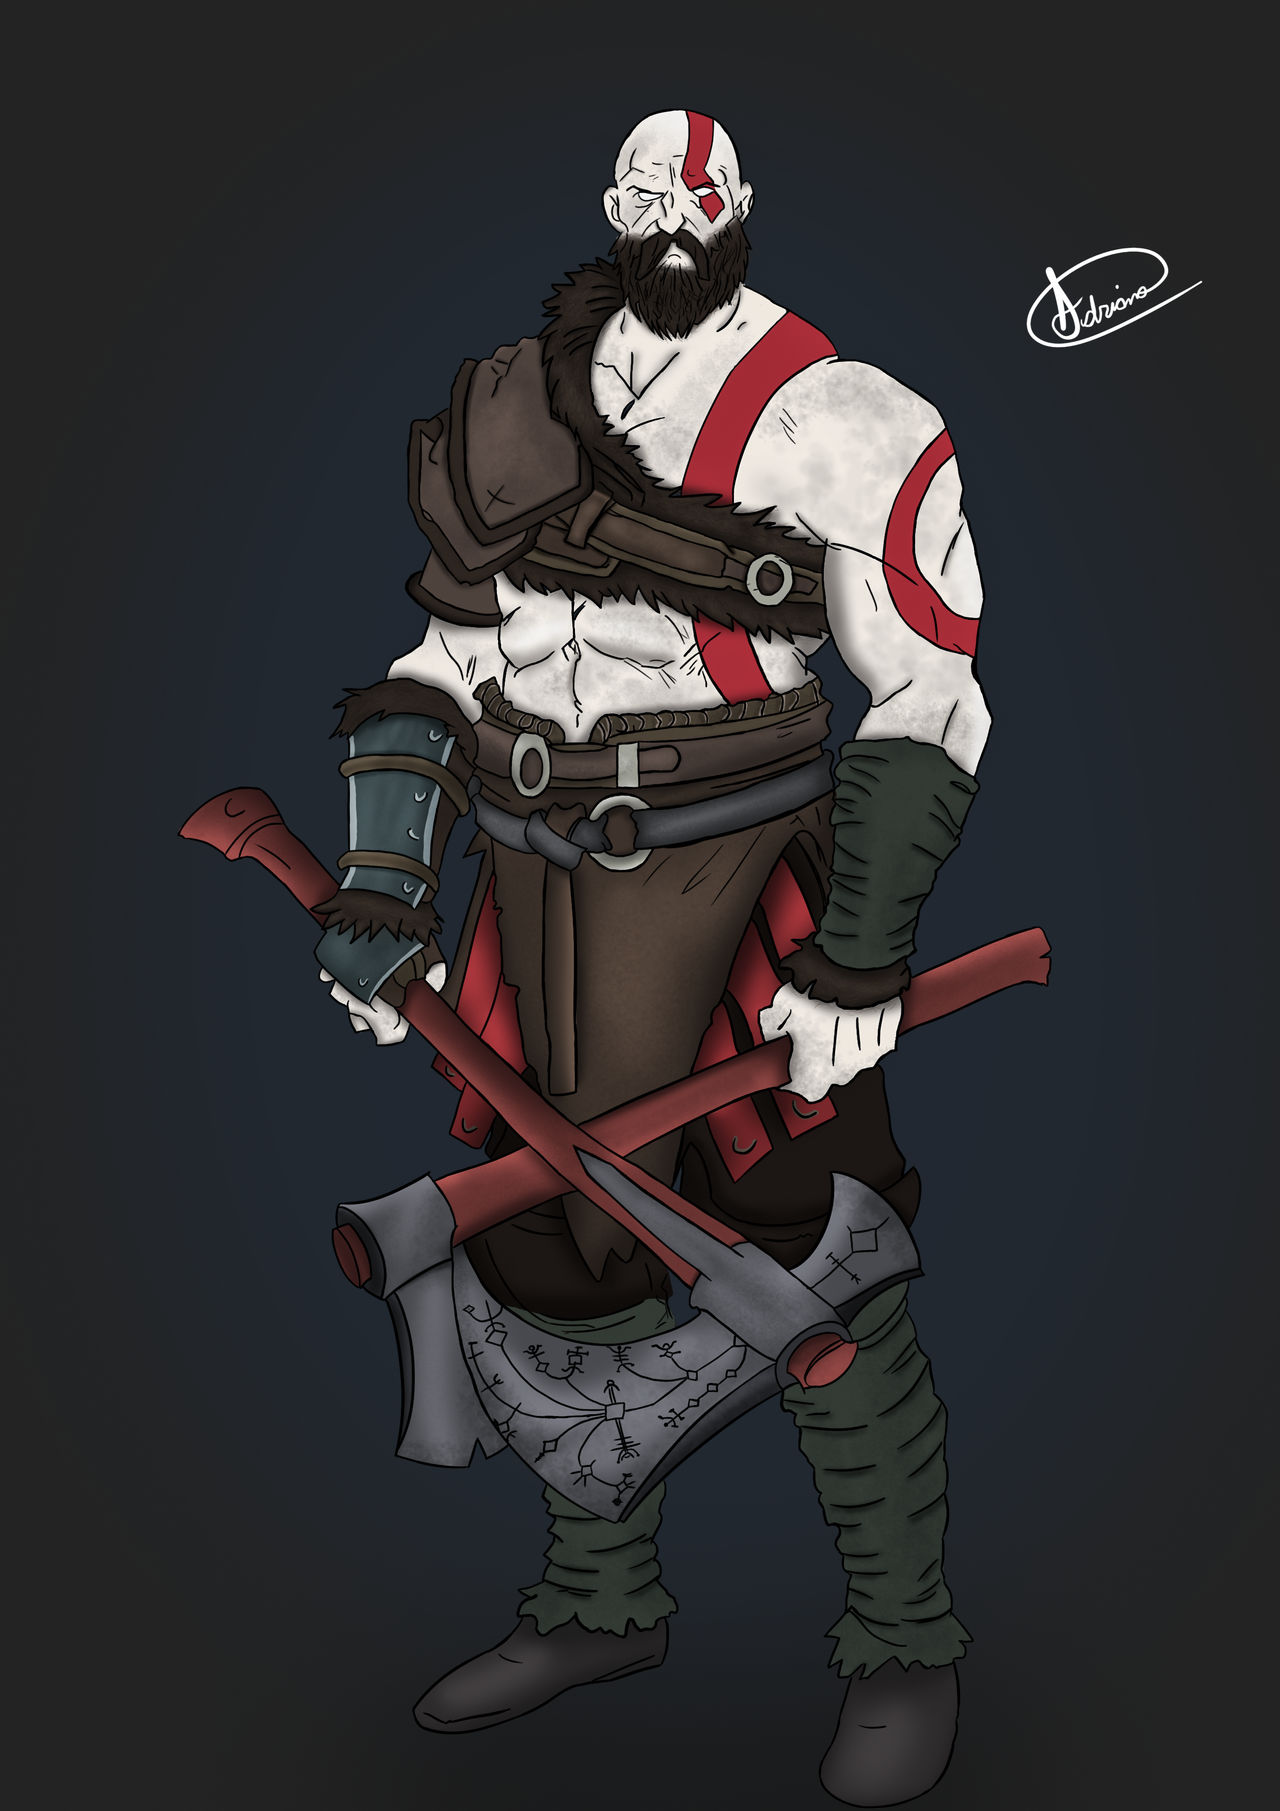 God of War - Kratos Digital Art by ShintaruSF on DeviantArt